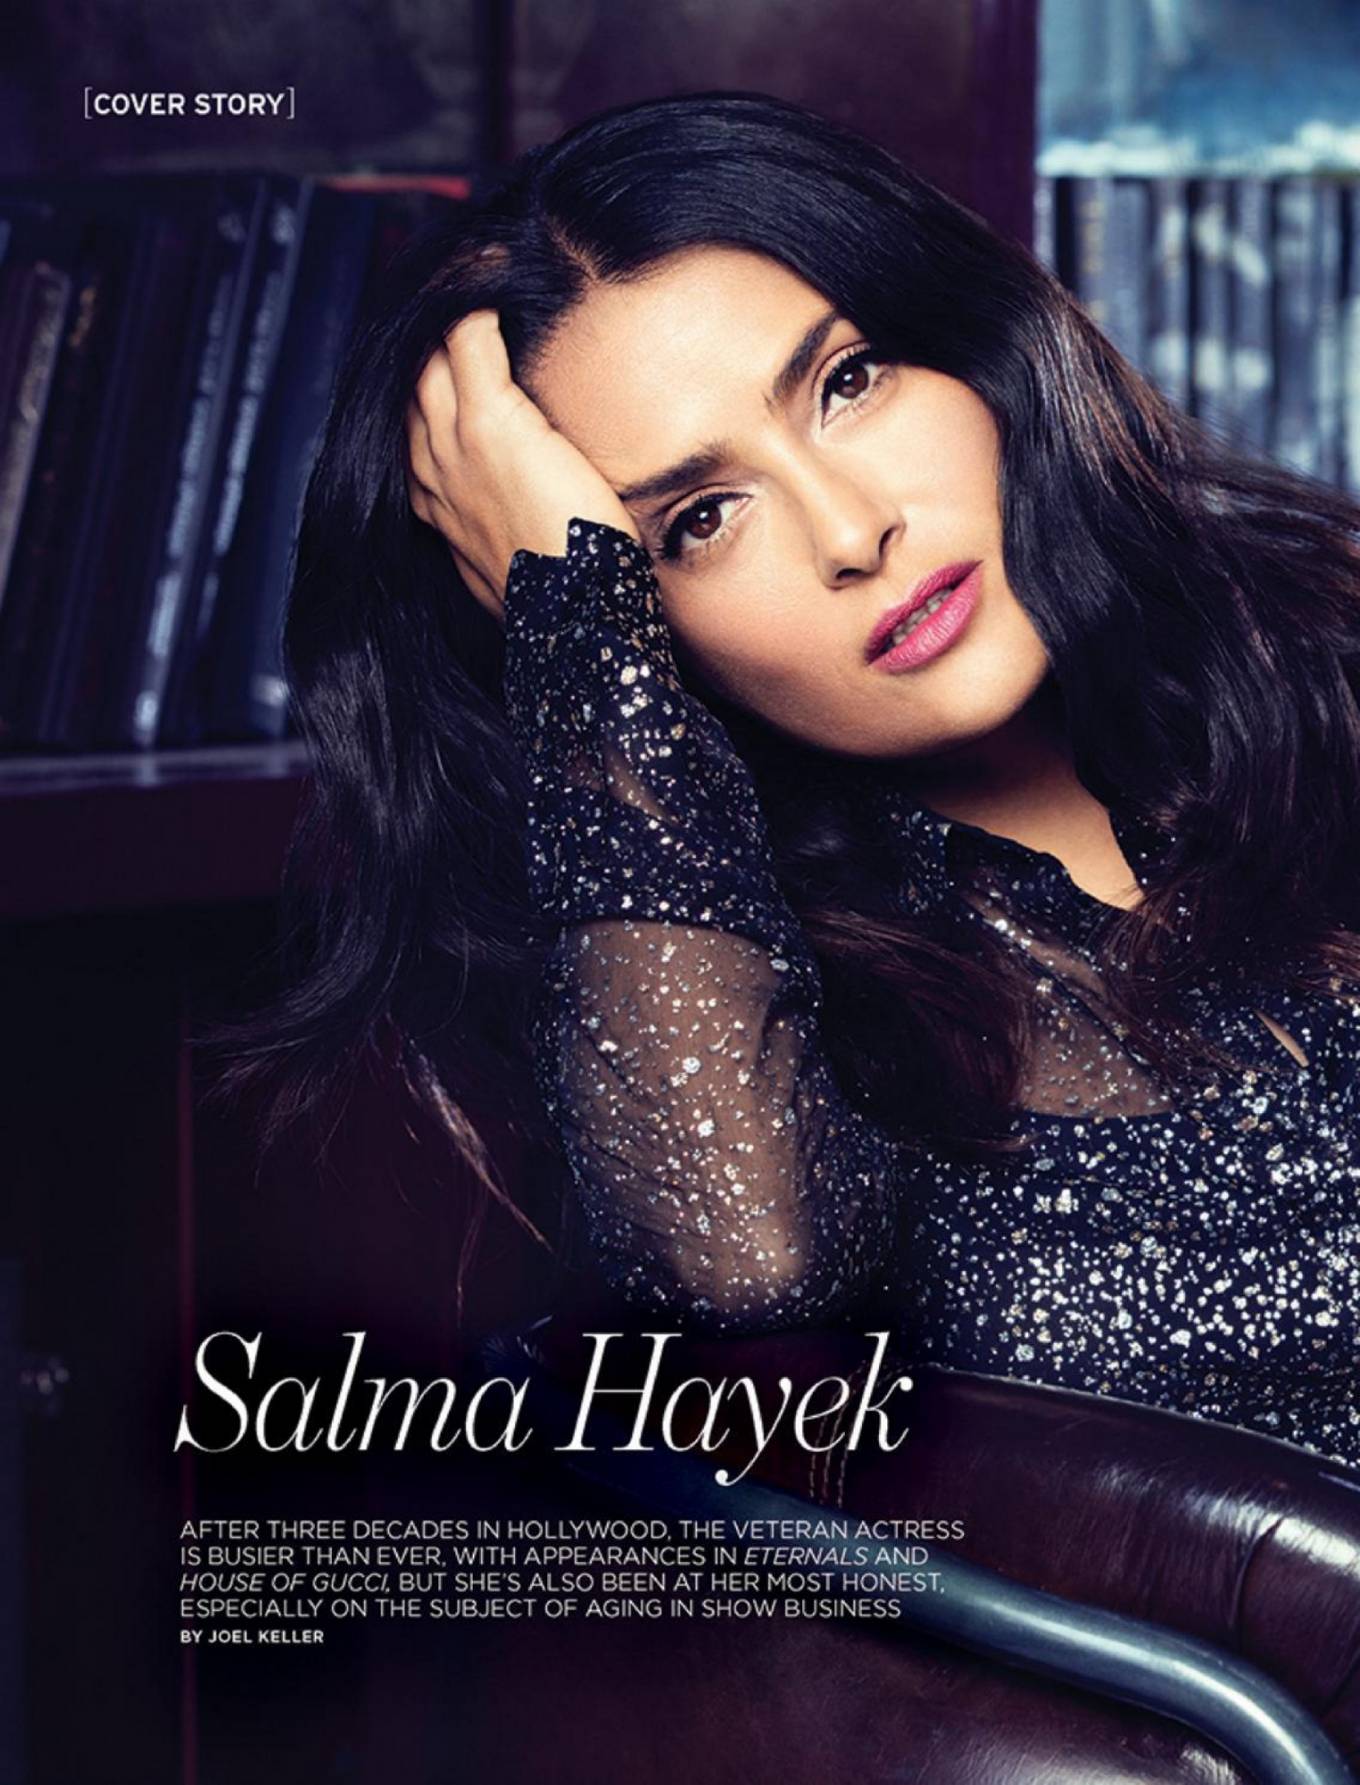 Salma Hayek Actress 2021 Wallpapers